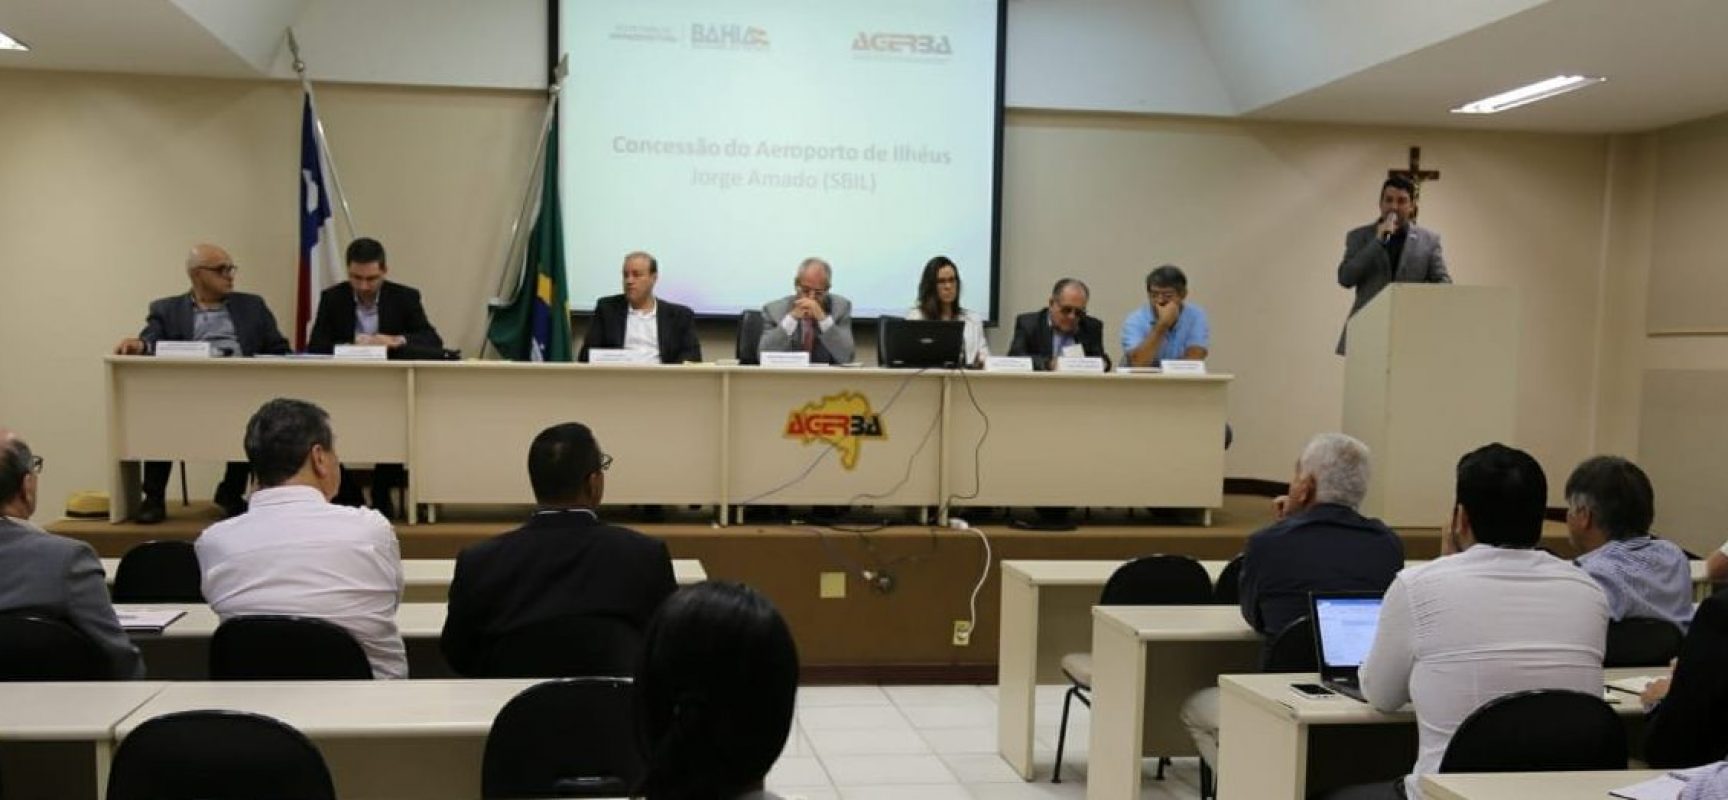 Prefeito pede ao estado Consulta Pública sobre o aeroporto Jorge Amado também em Ilhéus